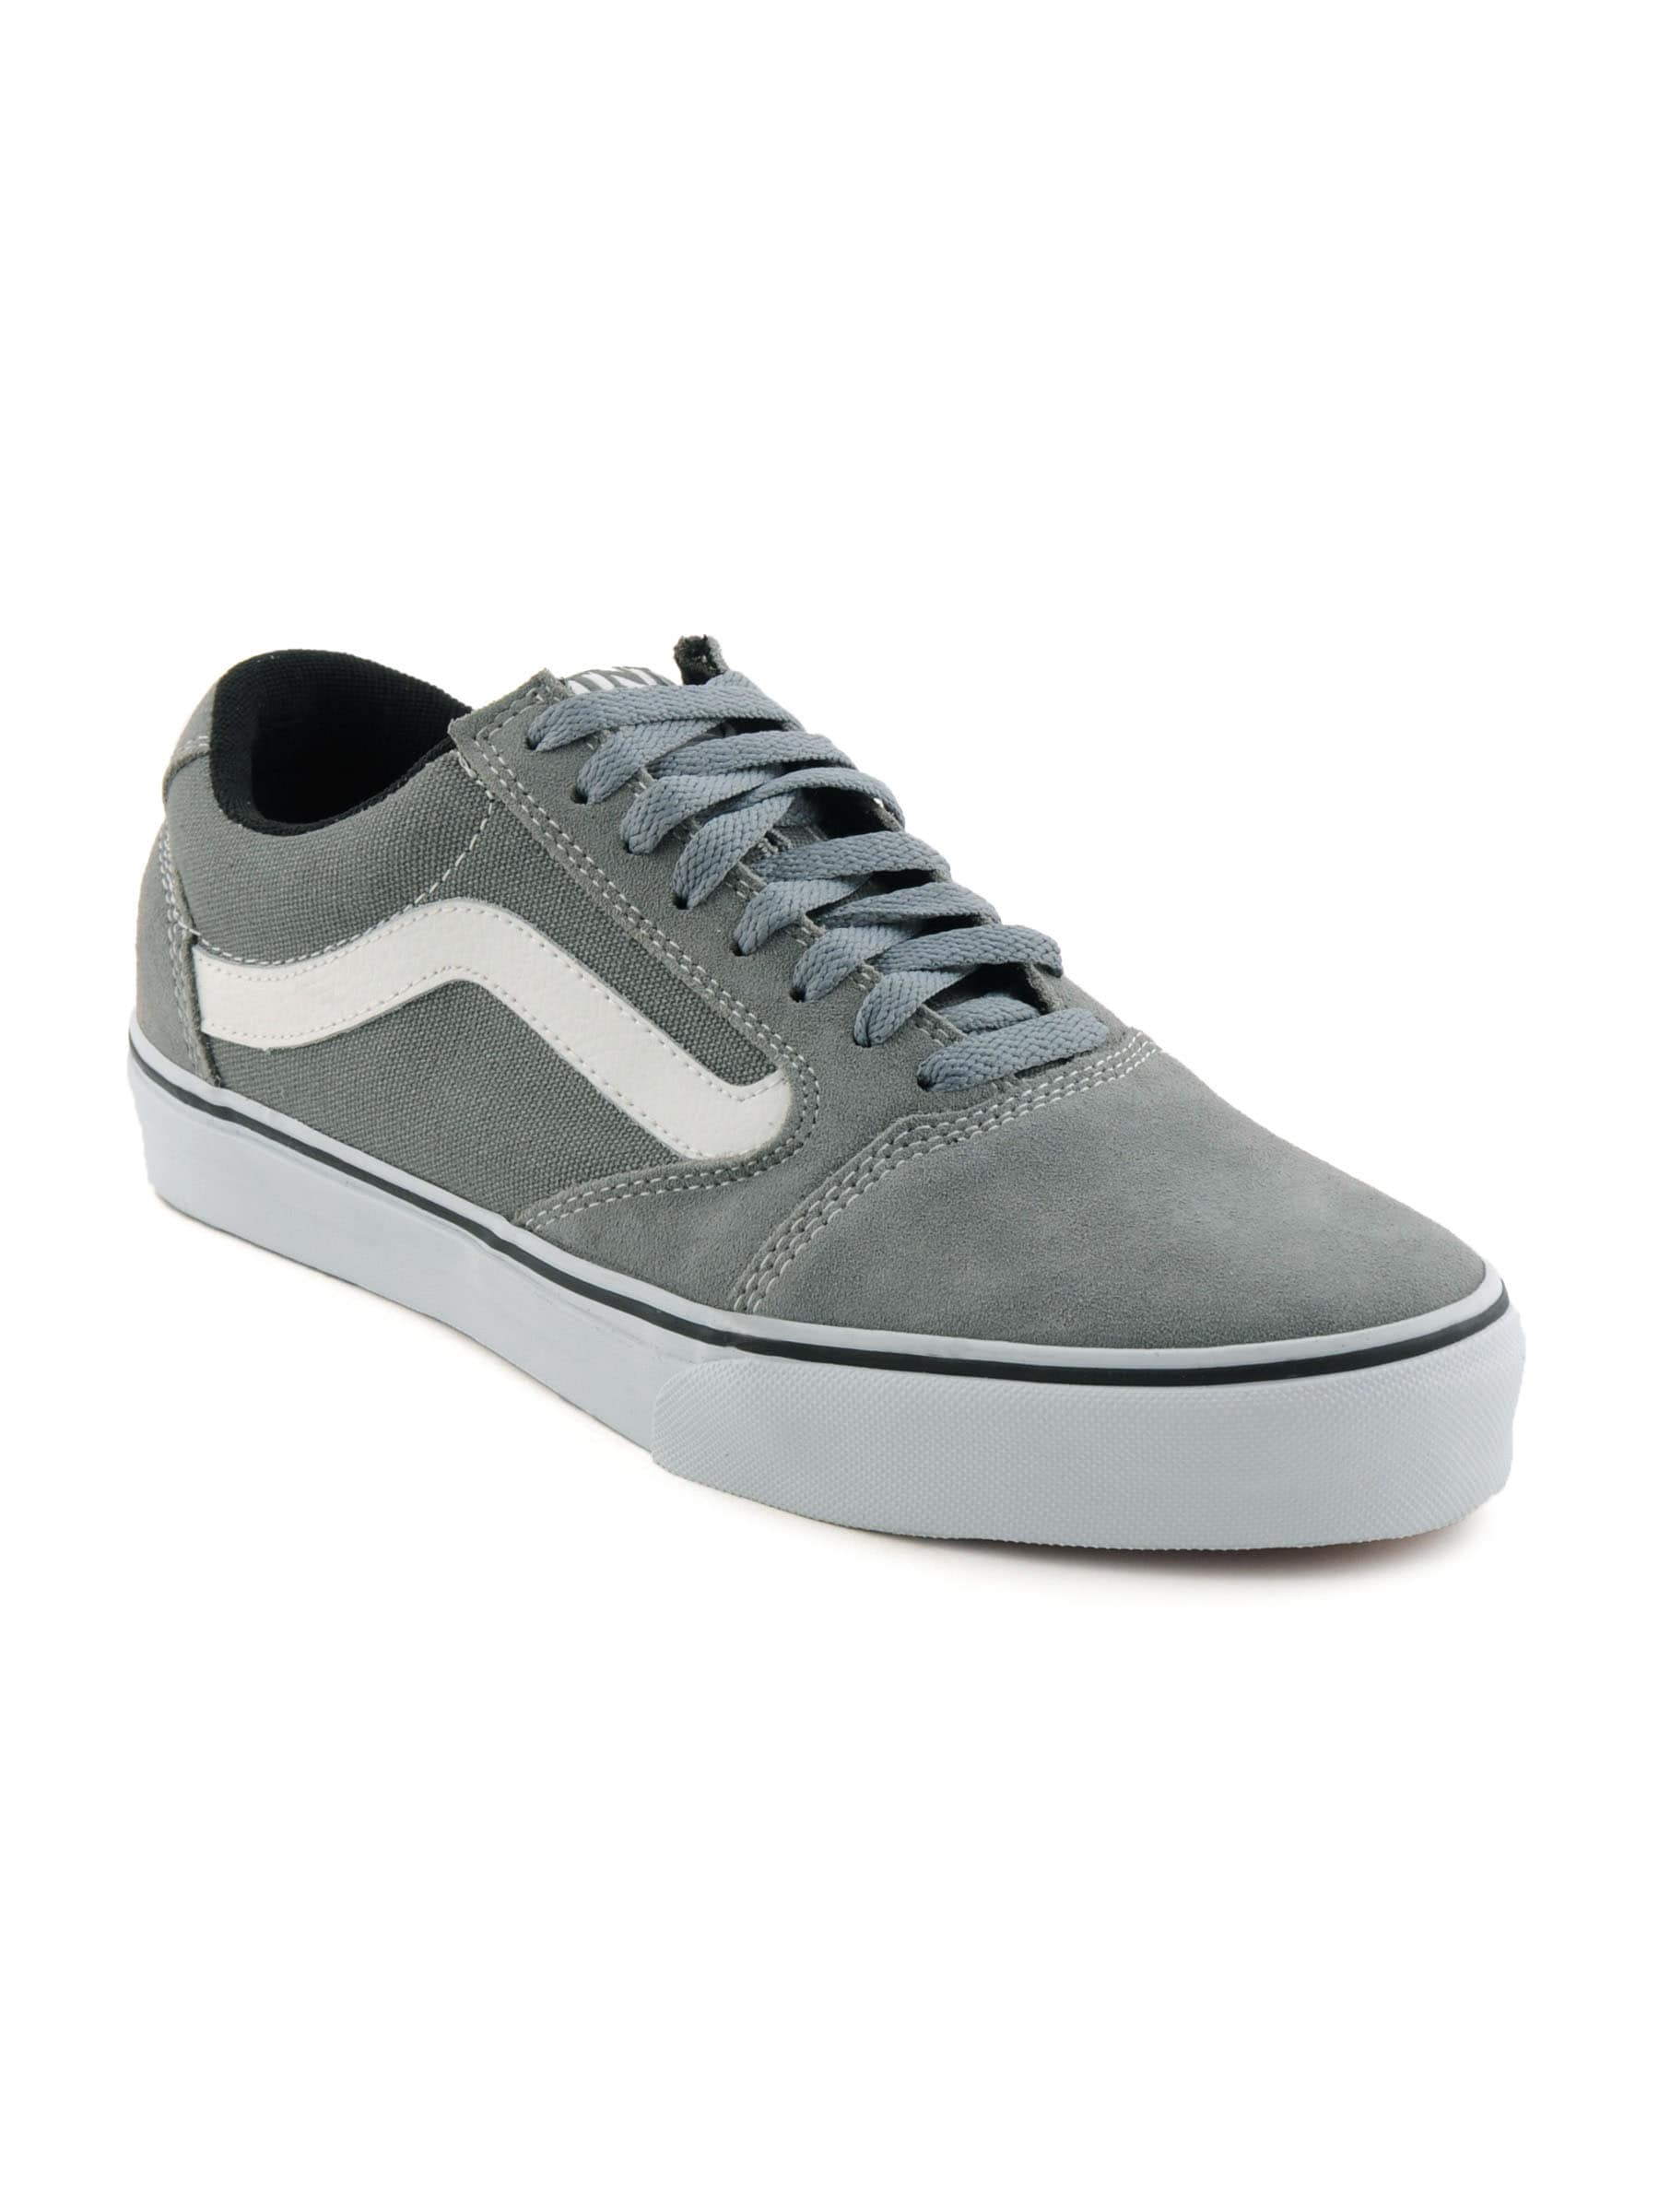 Vans Men TNT 5 Grey Casual Shoes